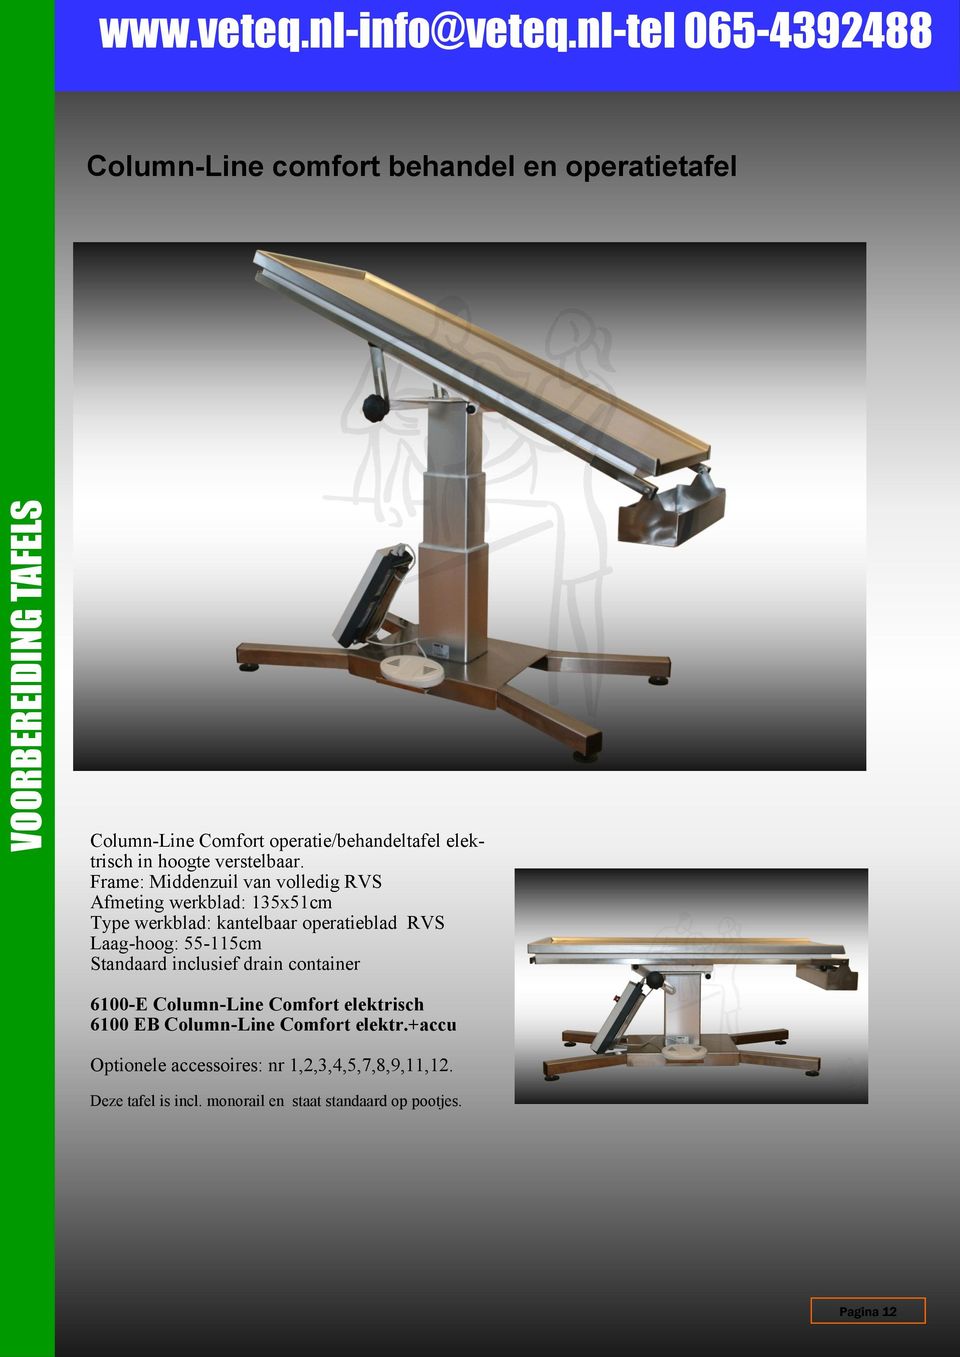 Frame: Middenzuil van volledig RVS Afmeting werkblad: 135x51cm Type werkblad: kantelbaar operatieblad RVS Laag-hoog: 55-115cm